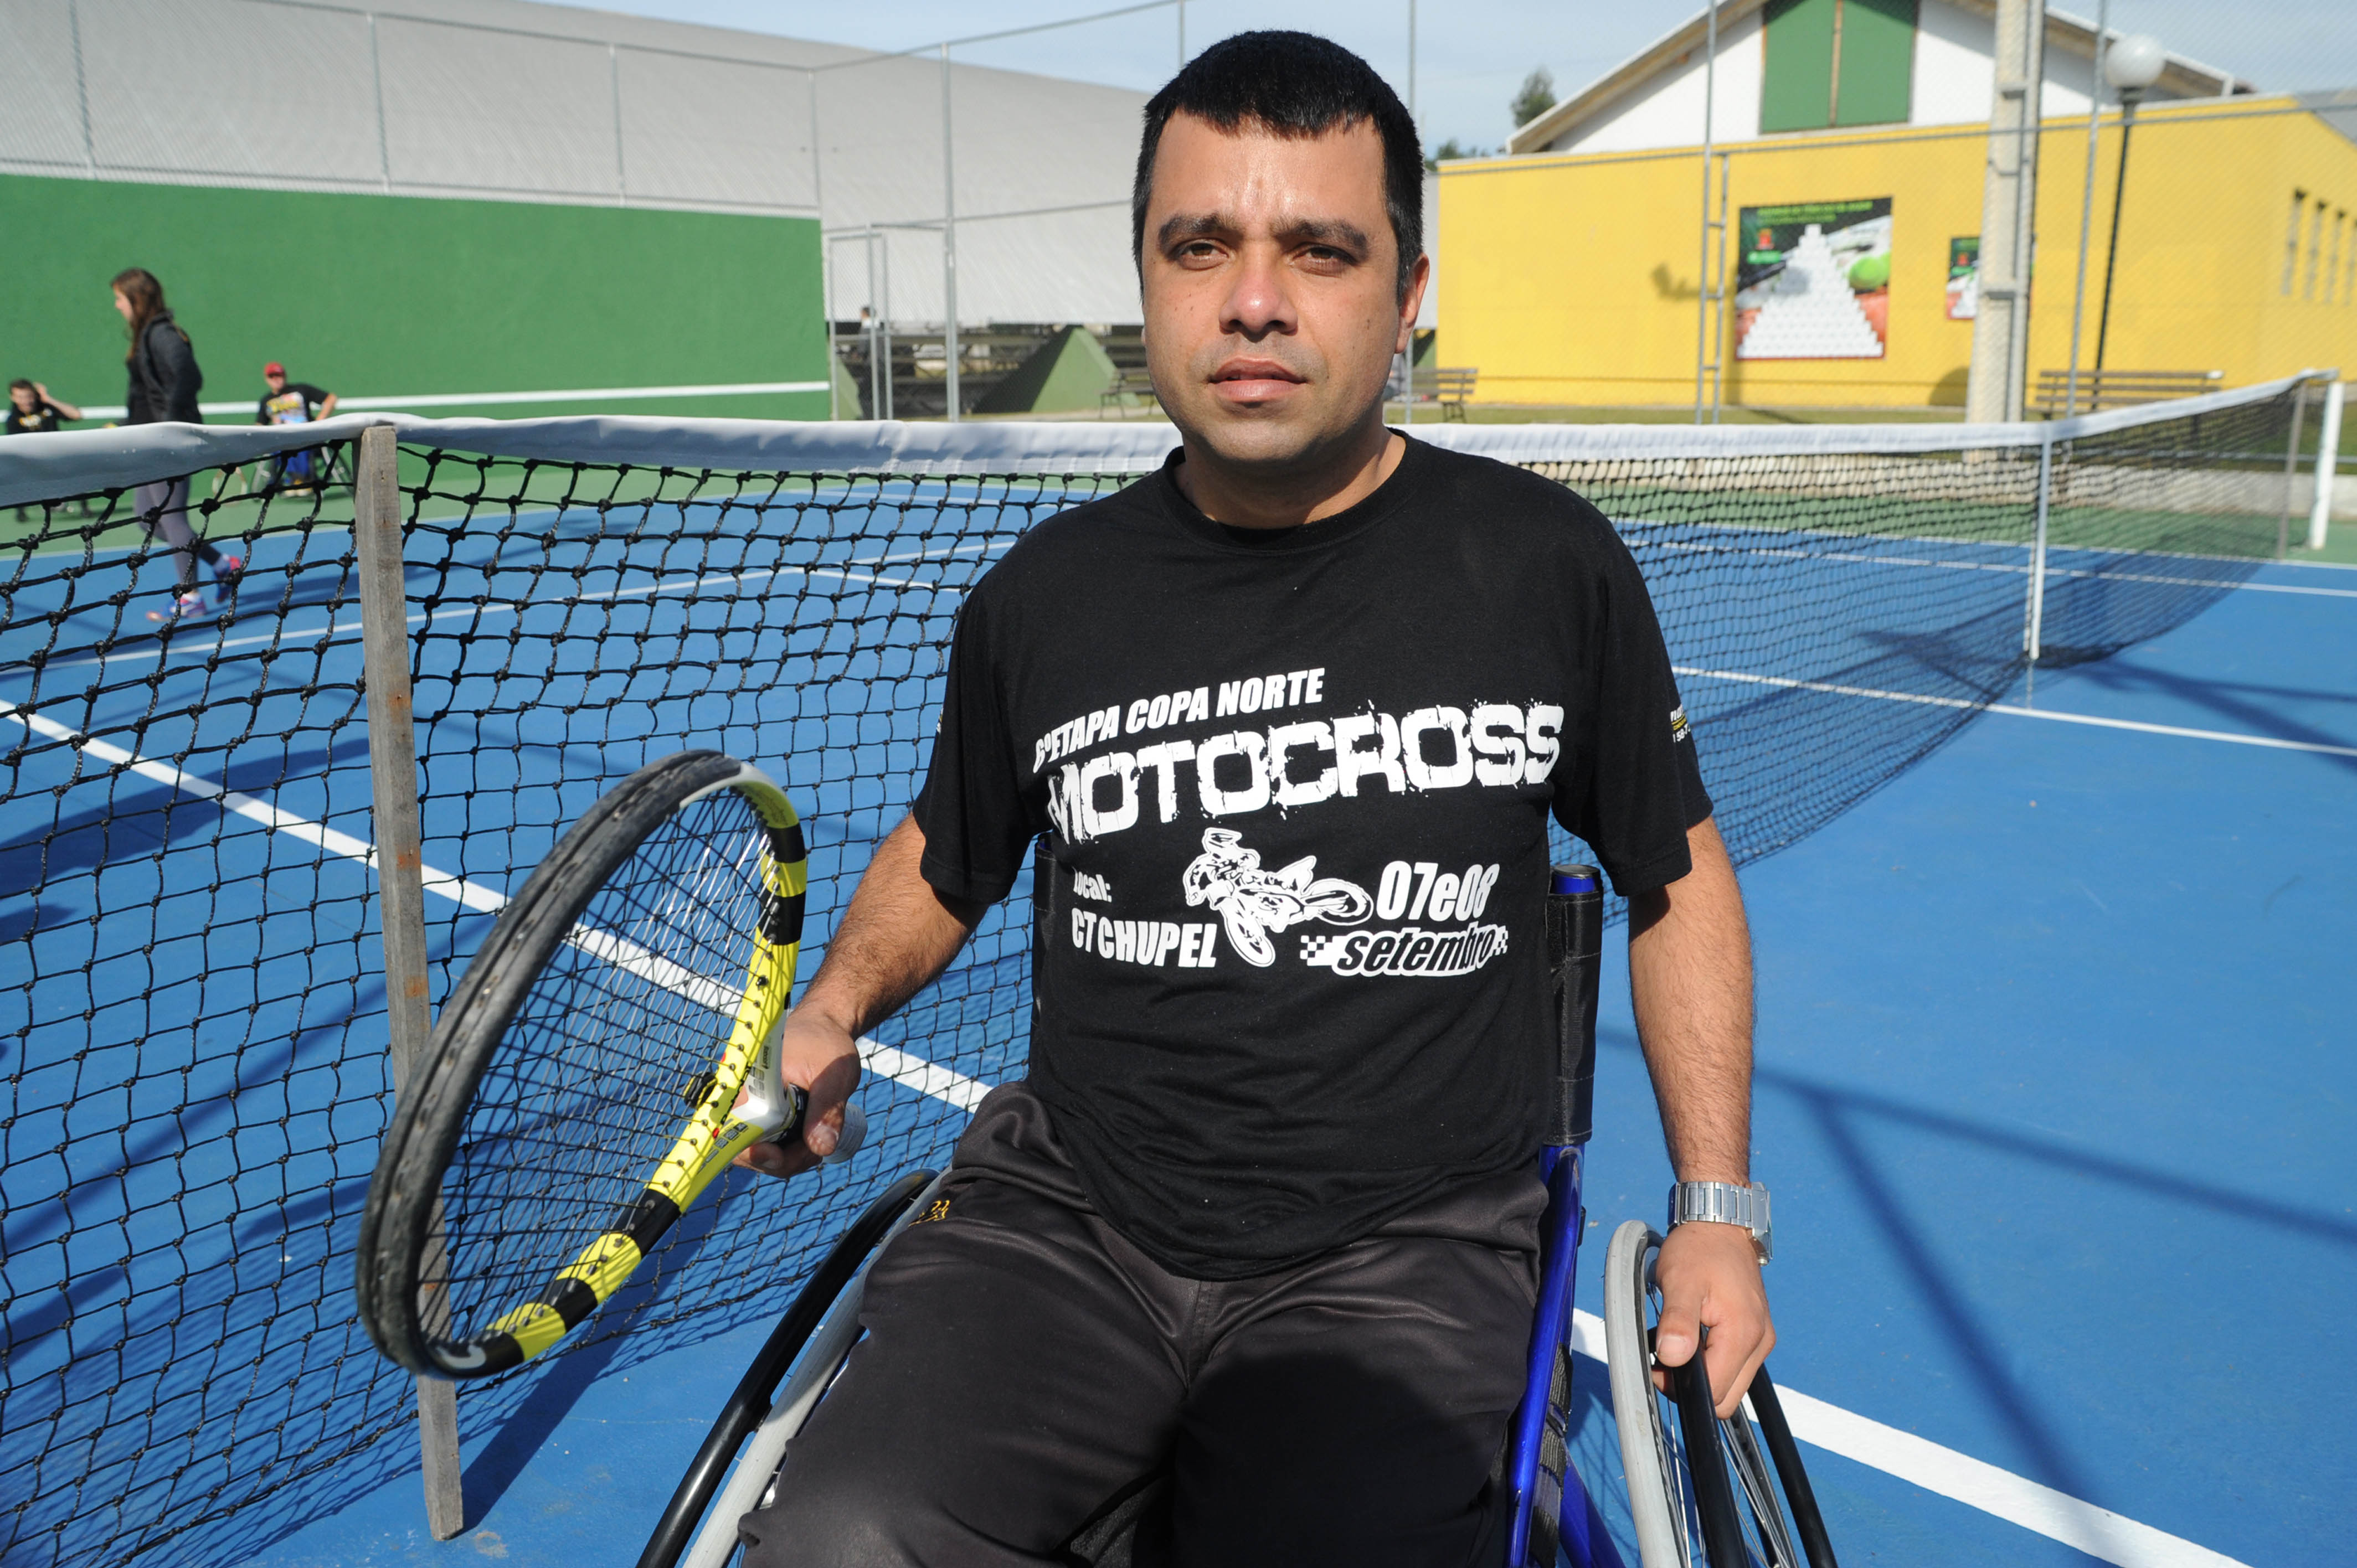 Tênis em Cadeira de Rodas Curitiba - PR